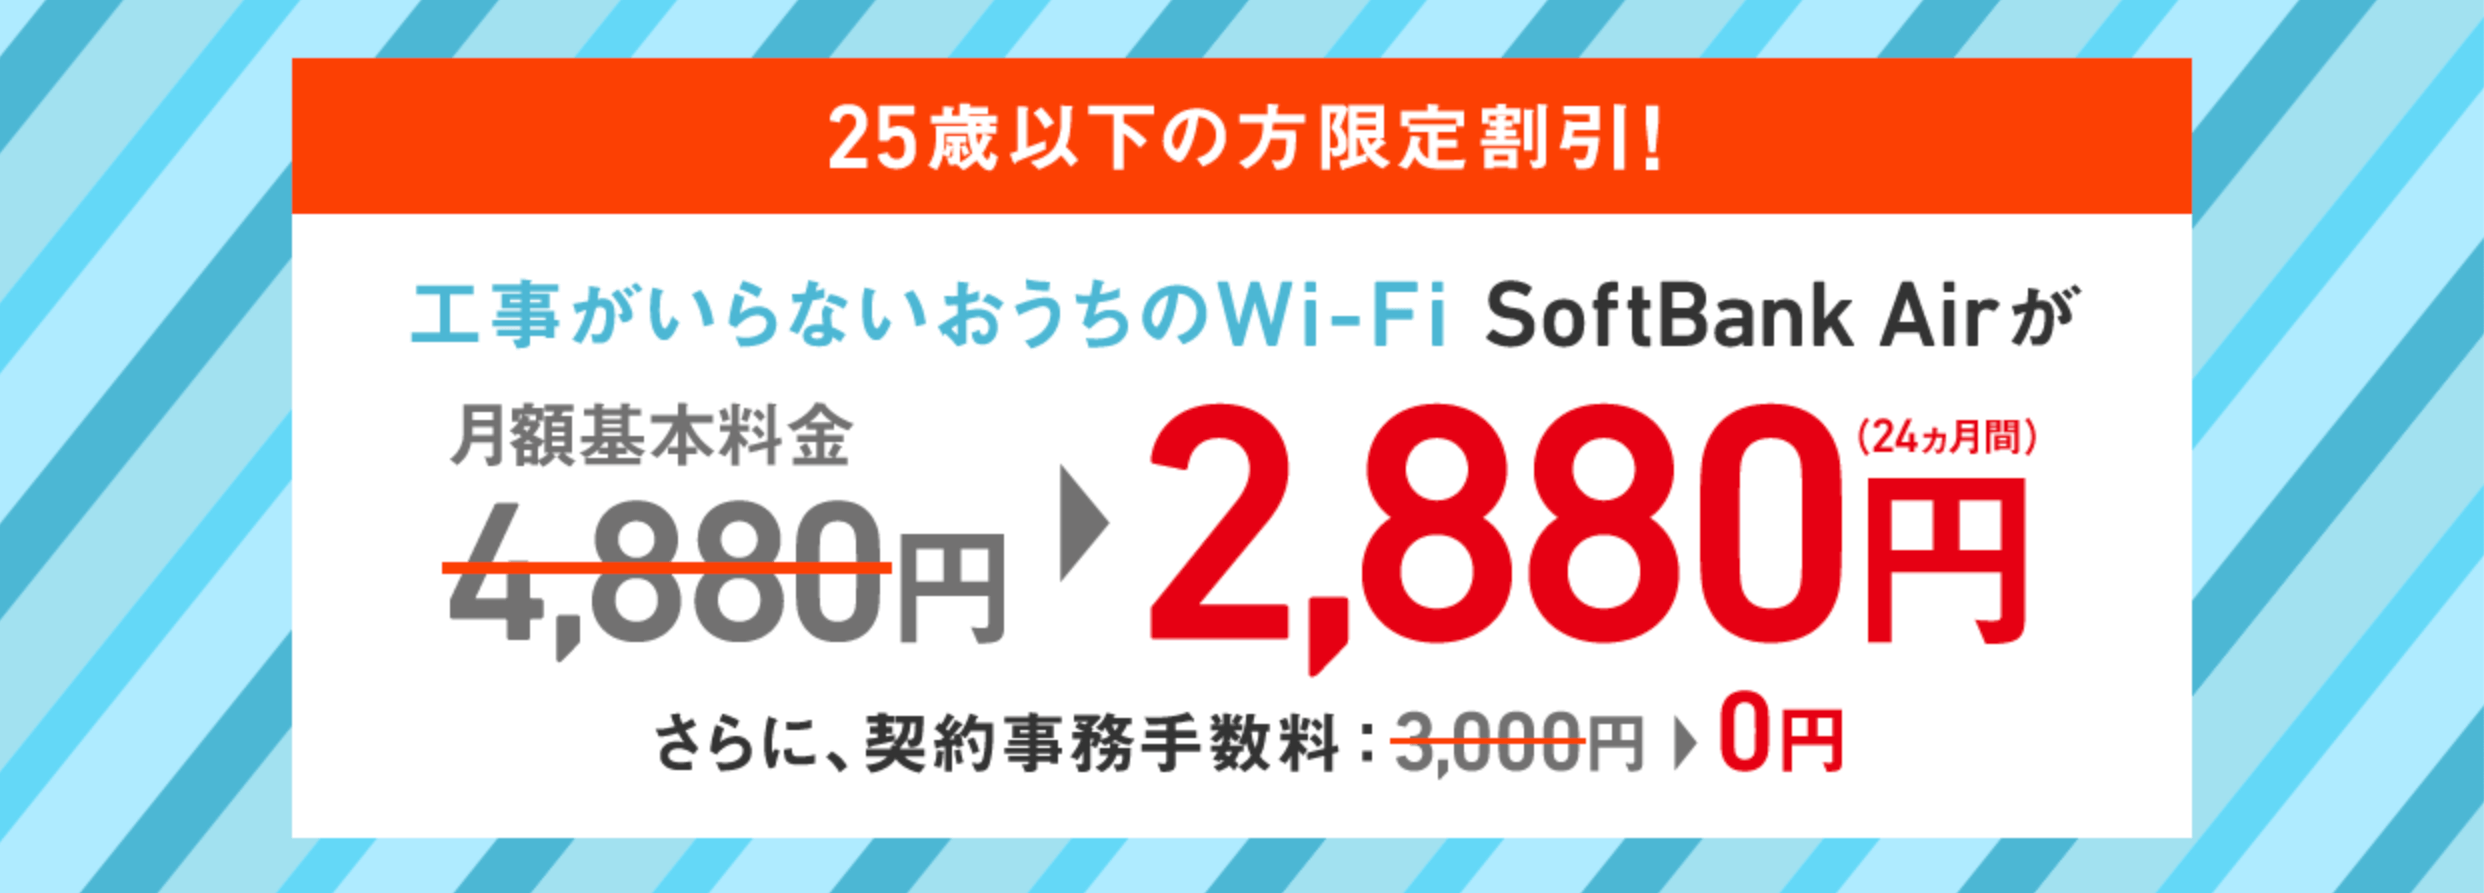 U-25限定SoftBank Air 割引